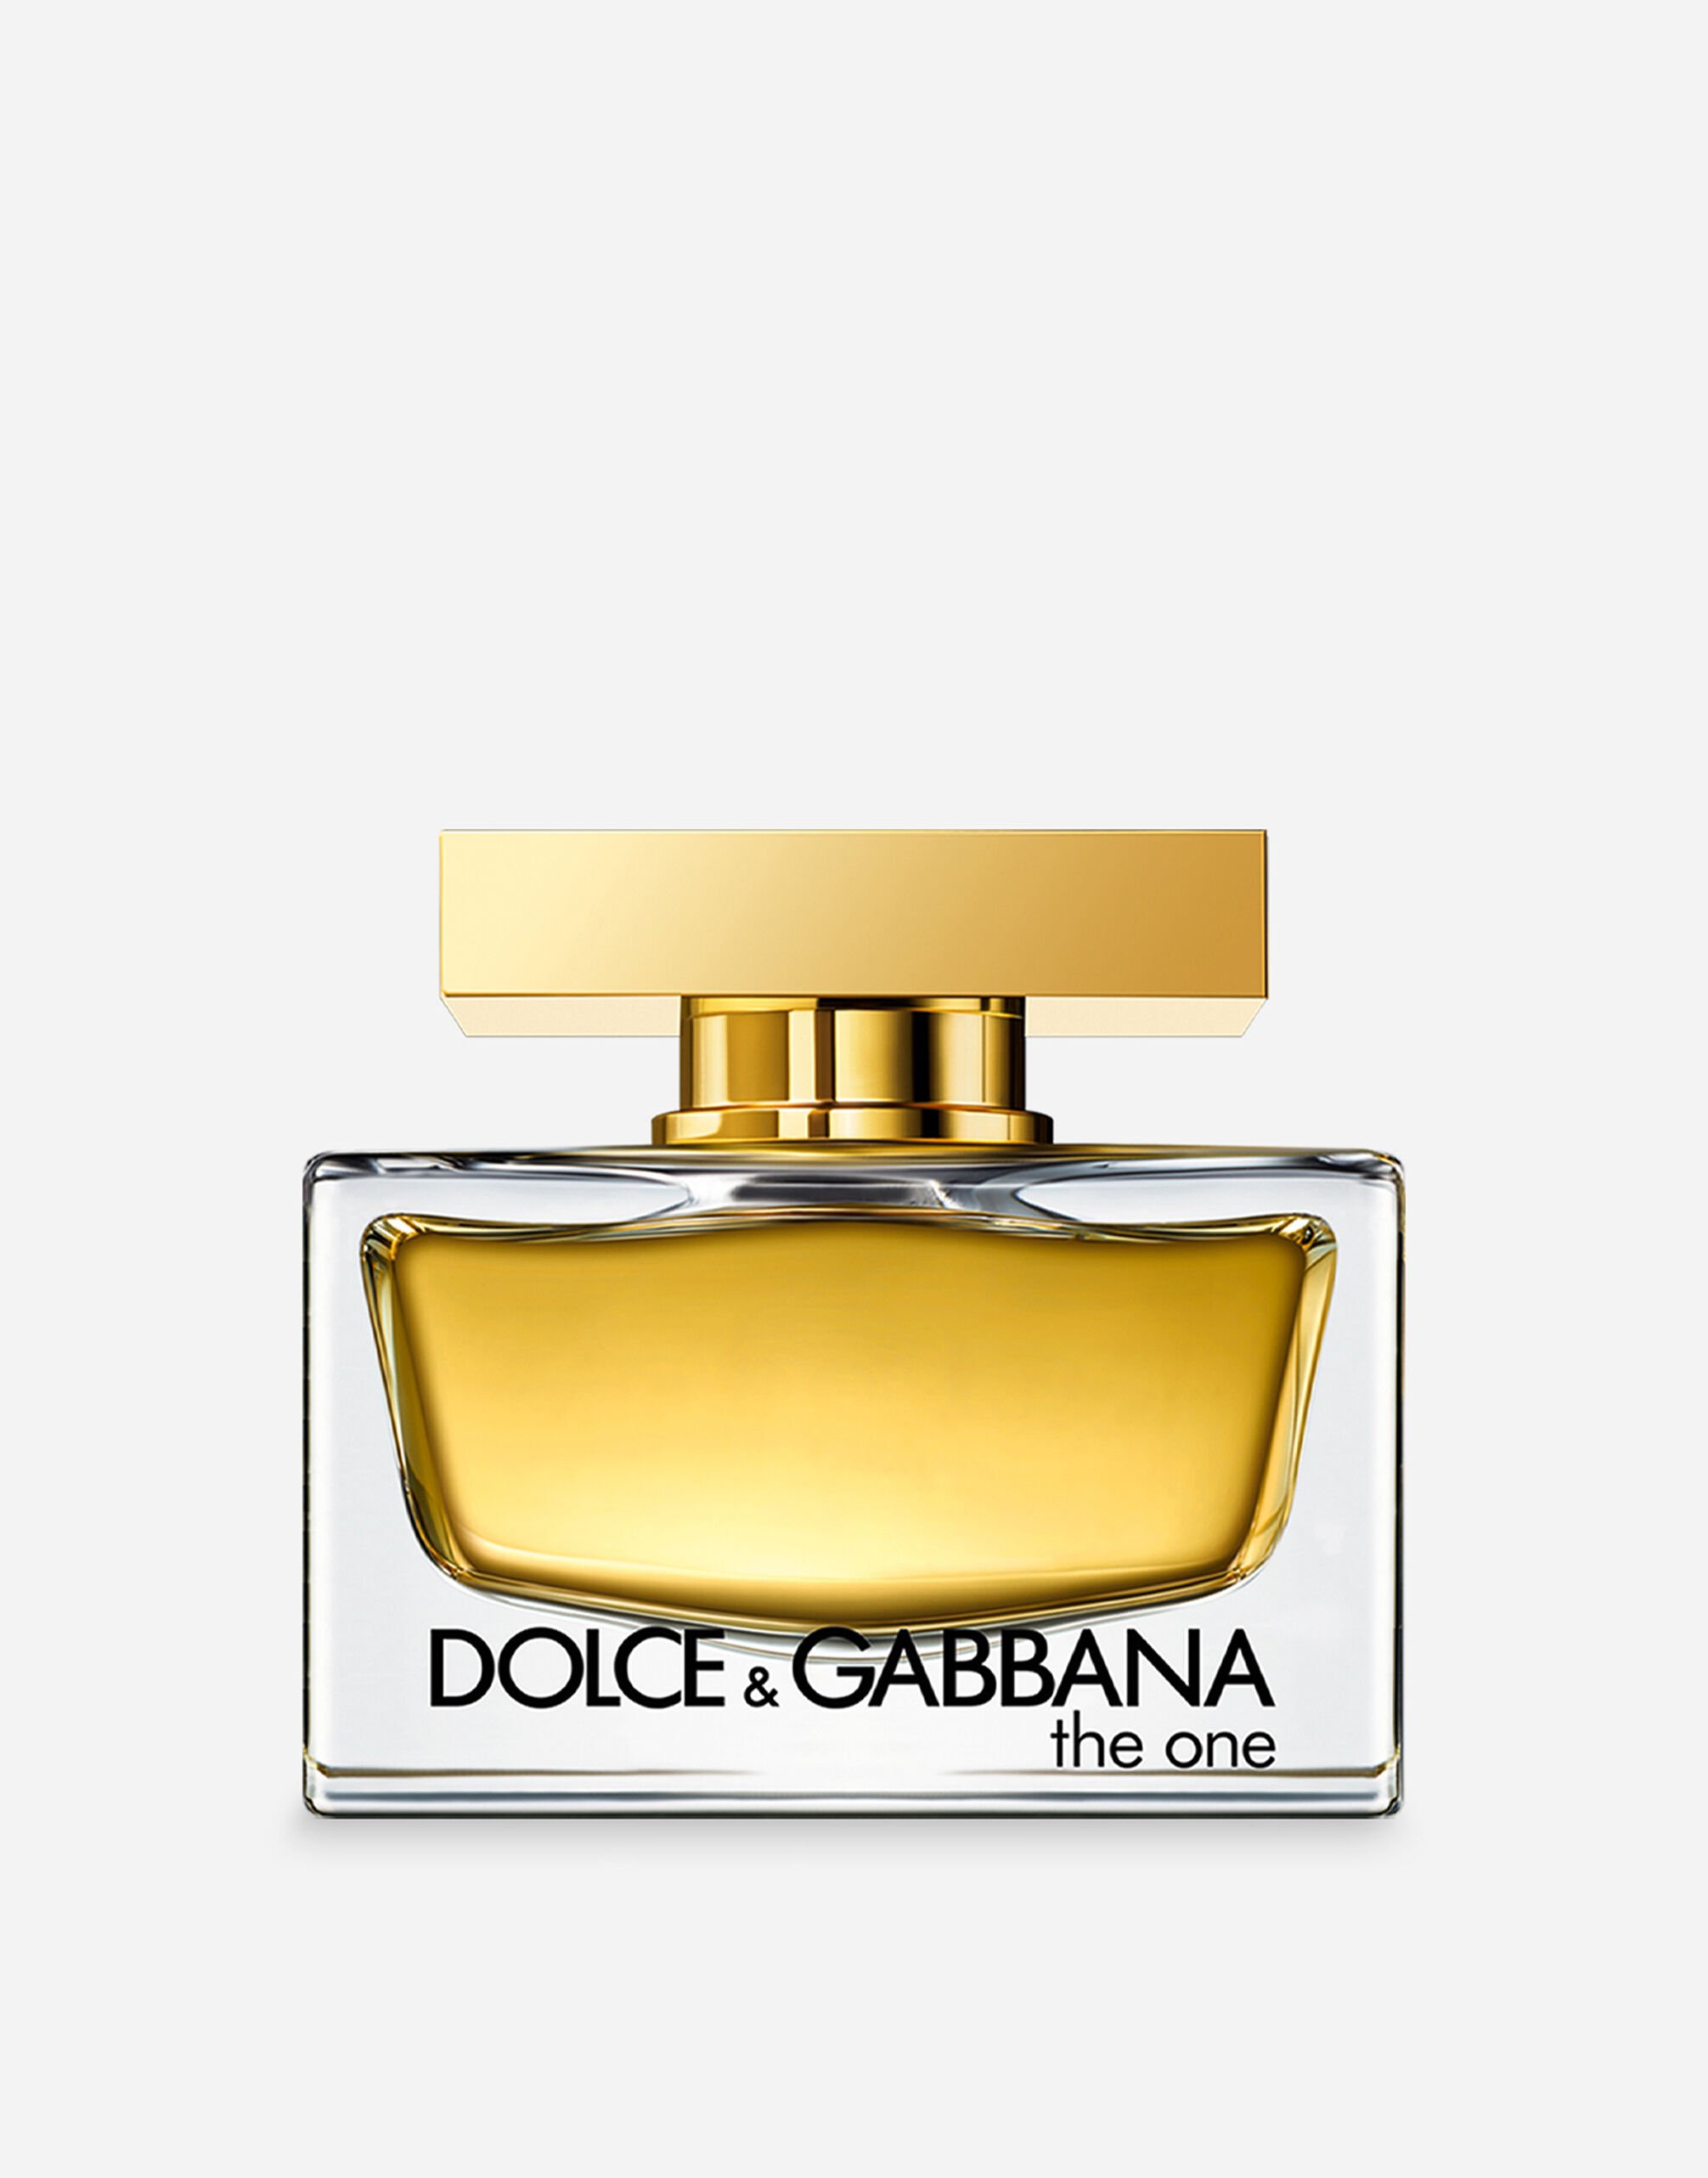 Dolce & Gabbana The One Eau de Parfum - VT0063VT000